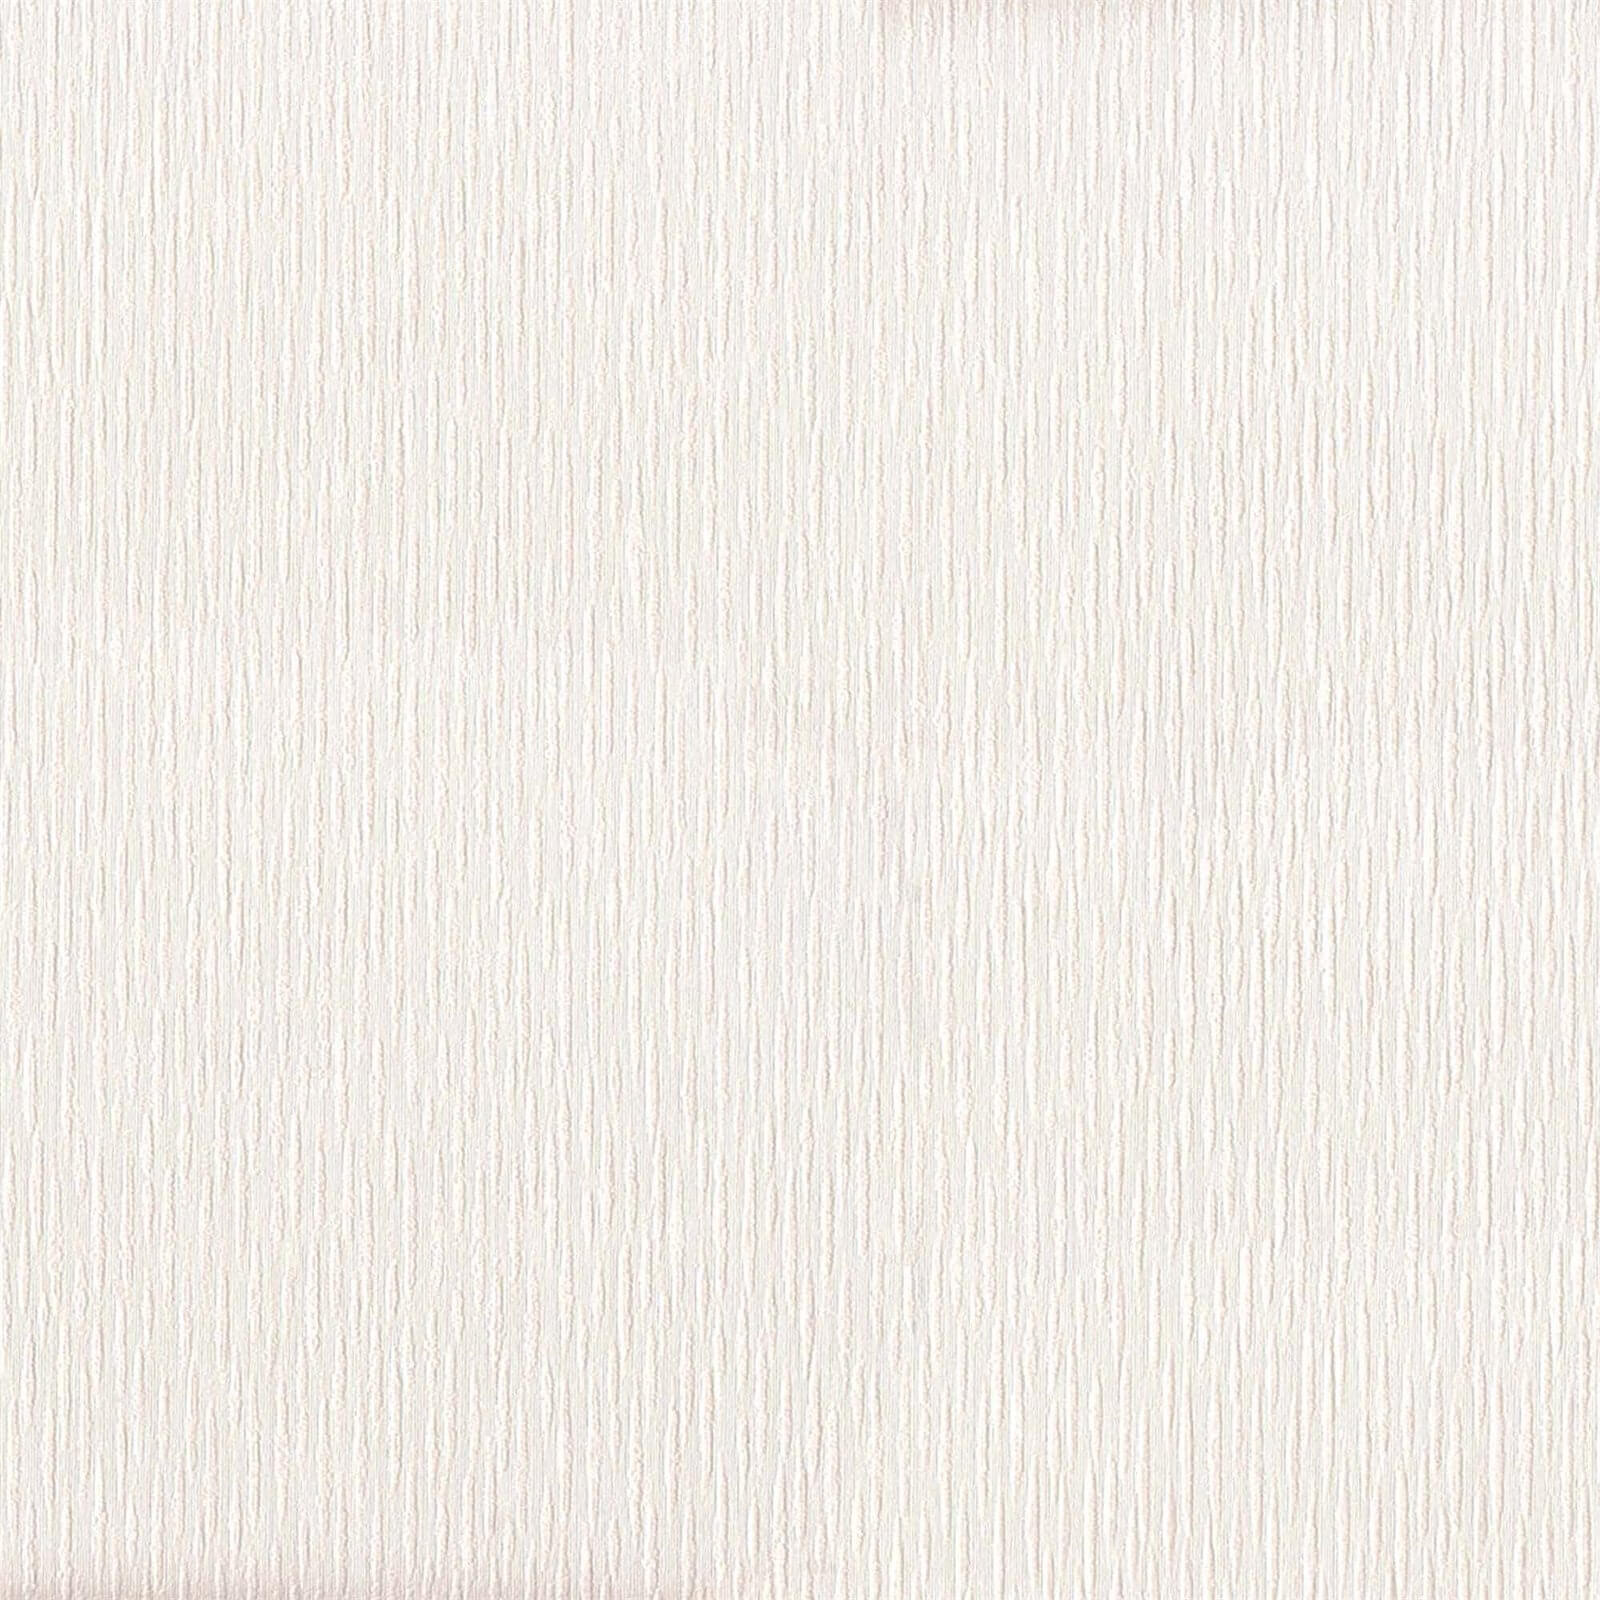 Belgravia Decor Tilly Cream Texture Wallpaper